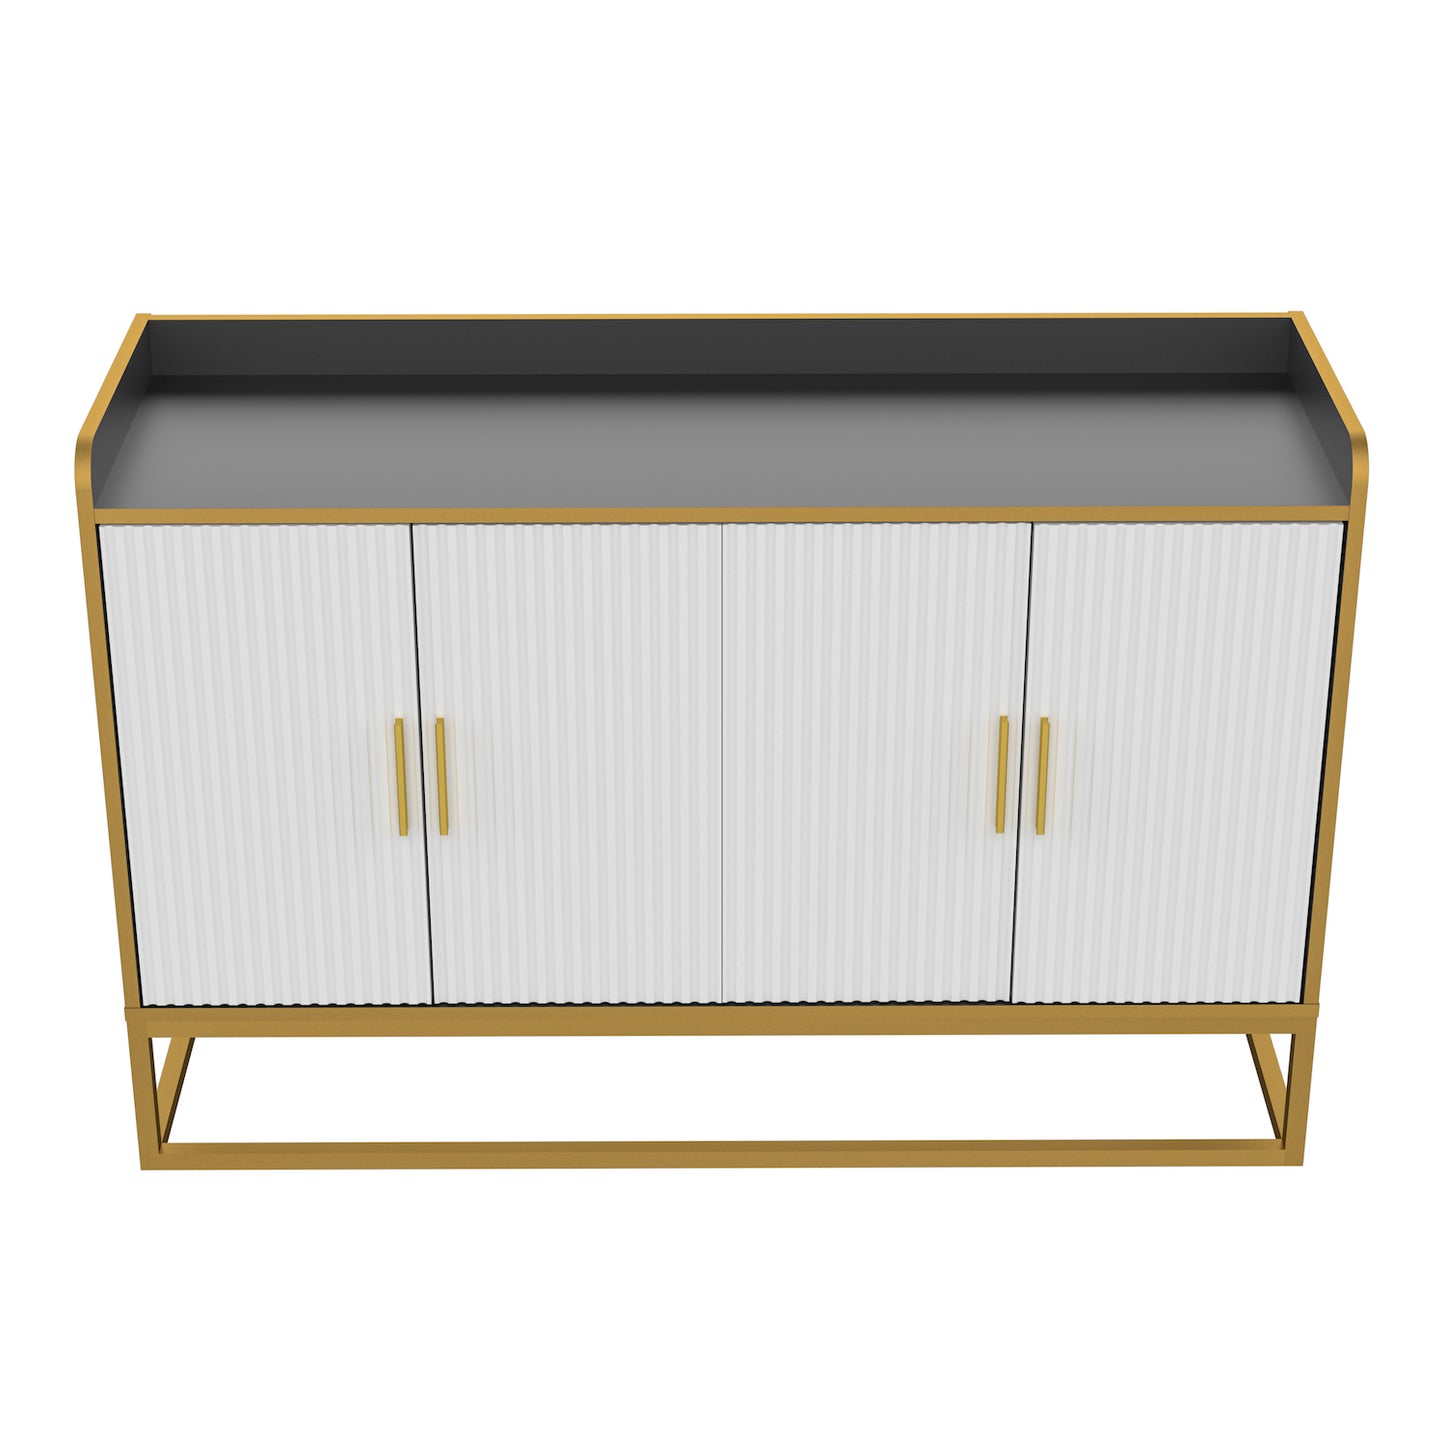 Justone Interior Modern Storage Cabinet - White/Gold/Black